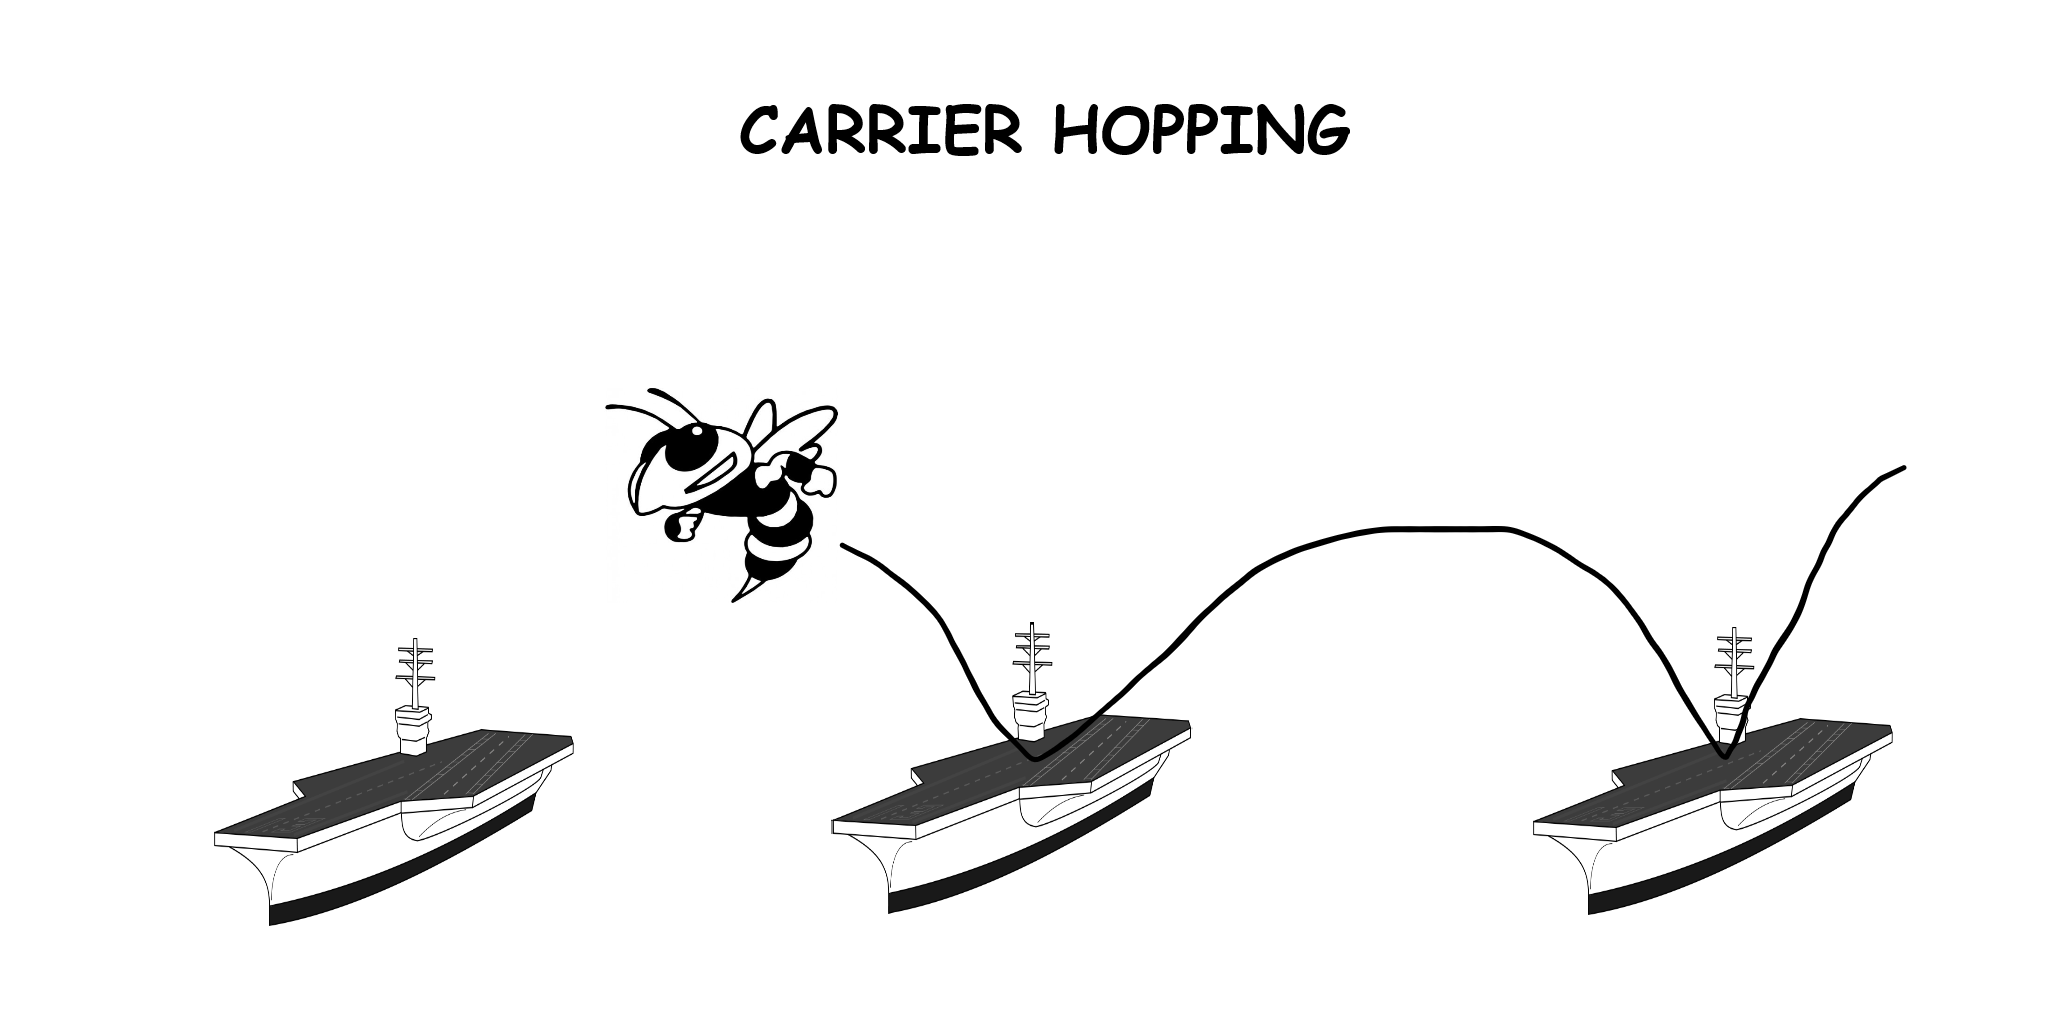 F-18 Carrier hopping